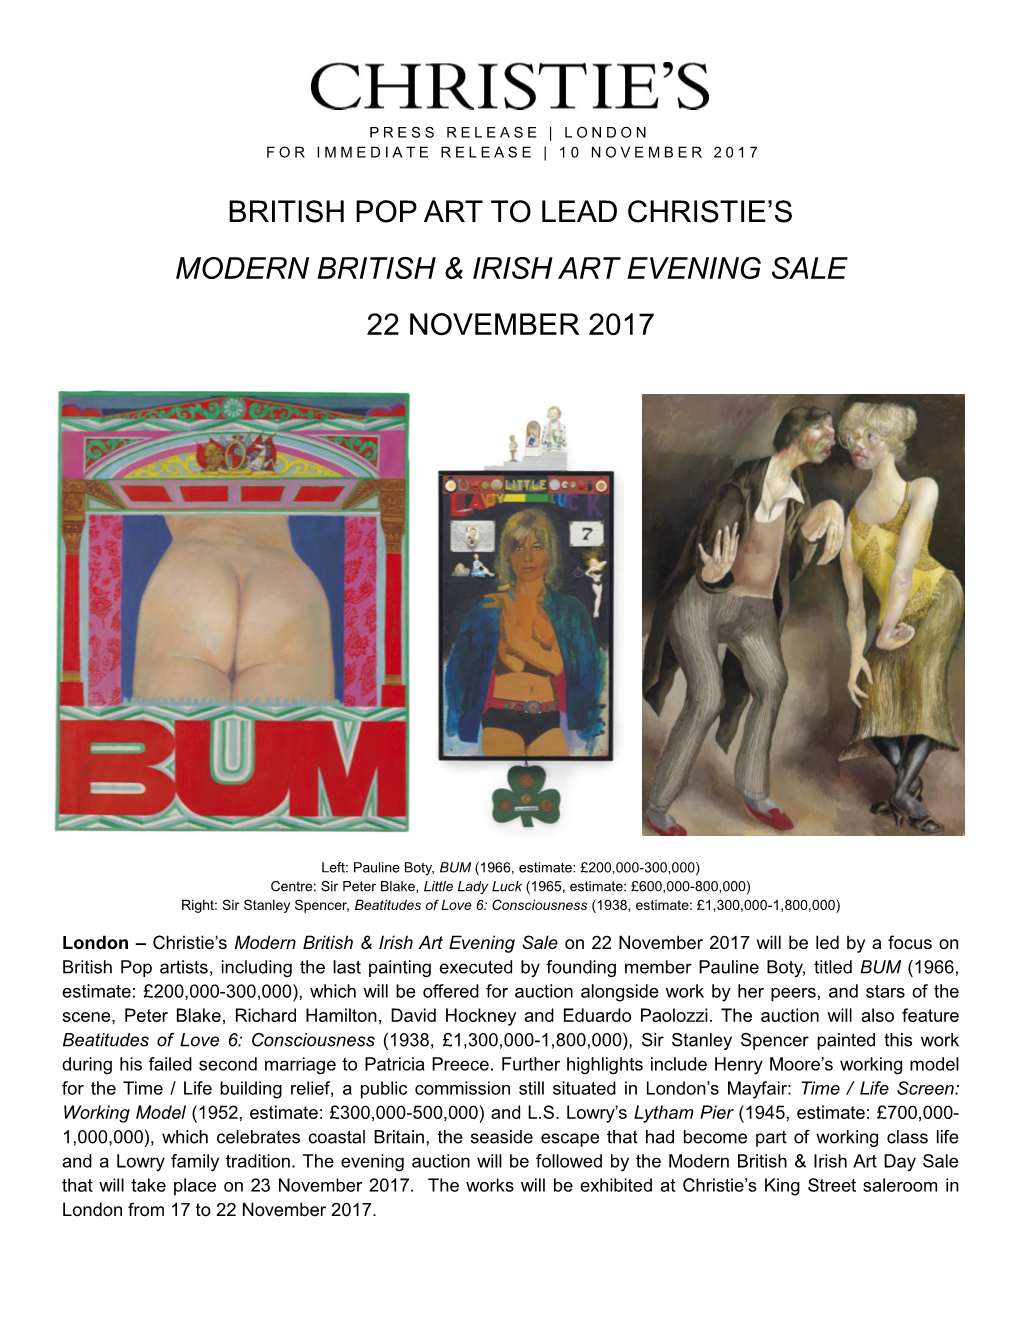 British Pop Art to Lead Christie's Modern British